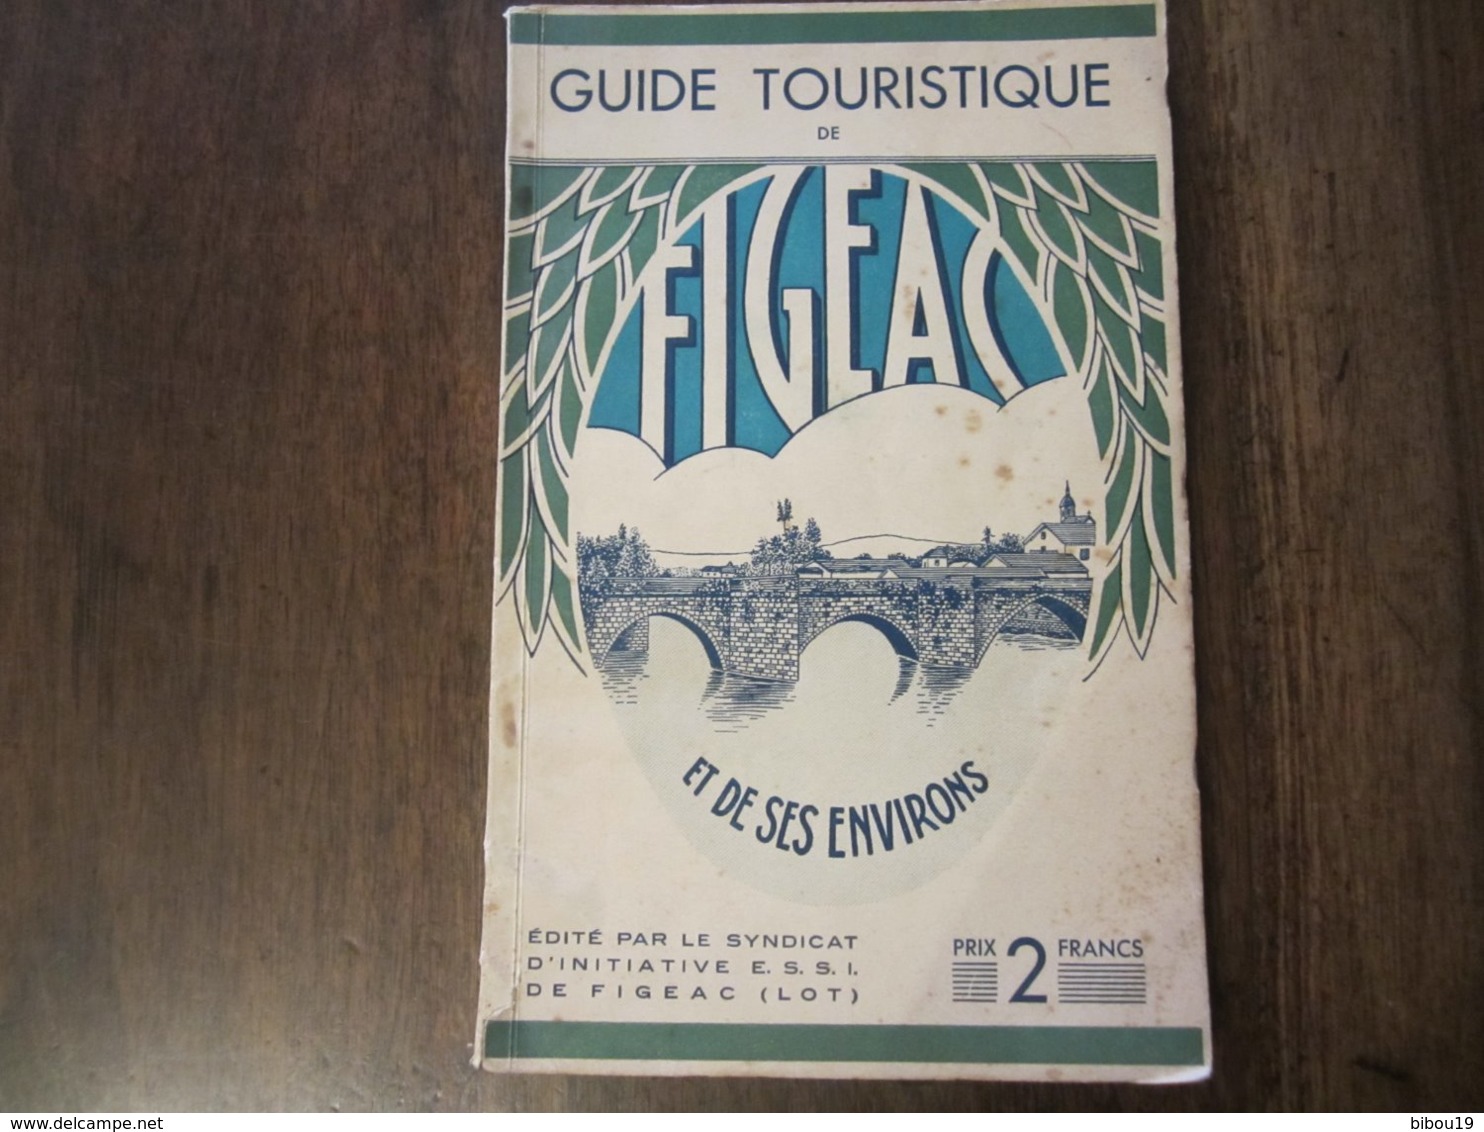 GUIDE TOURISTIQUE DE FIGEAC 1930 EDITE PAR LE SYNDICAT D INITIATIVE DE FIGEAC LOT - Tourism